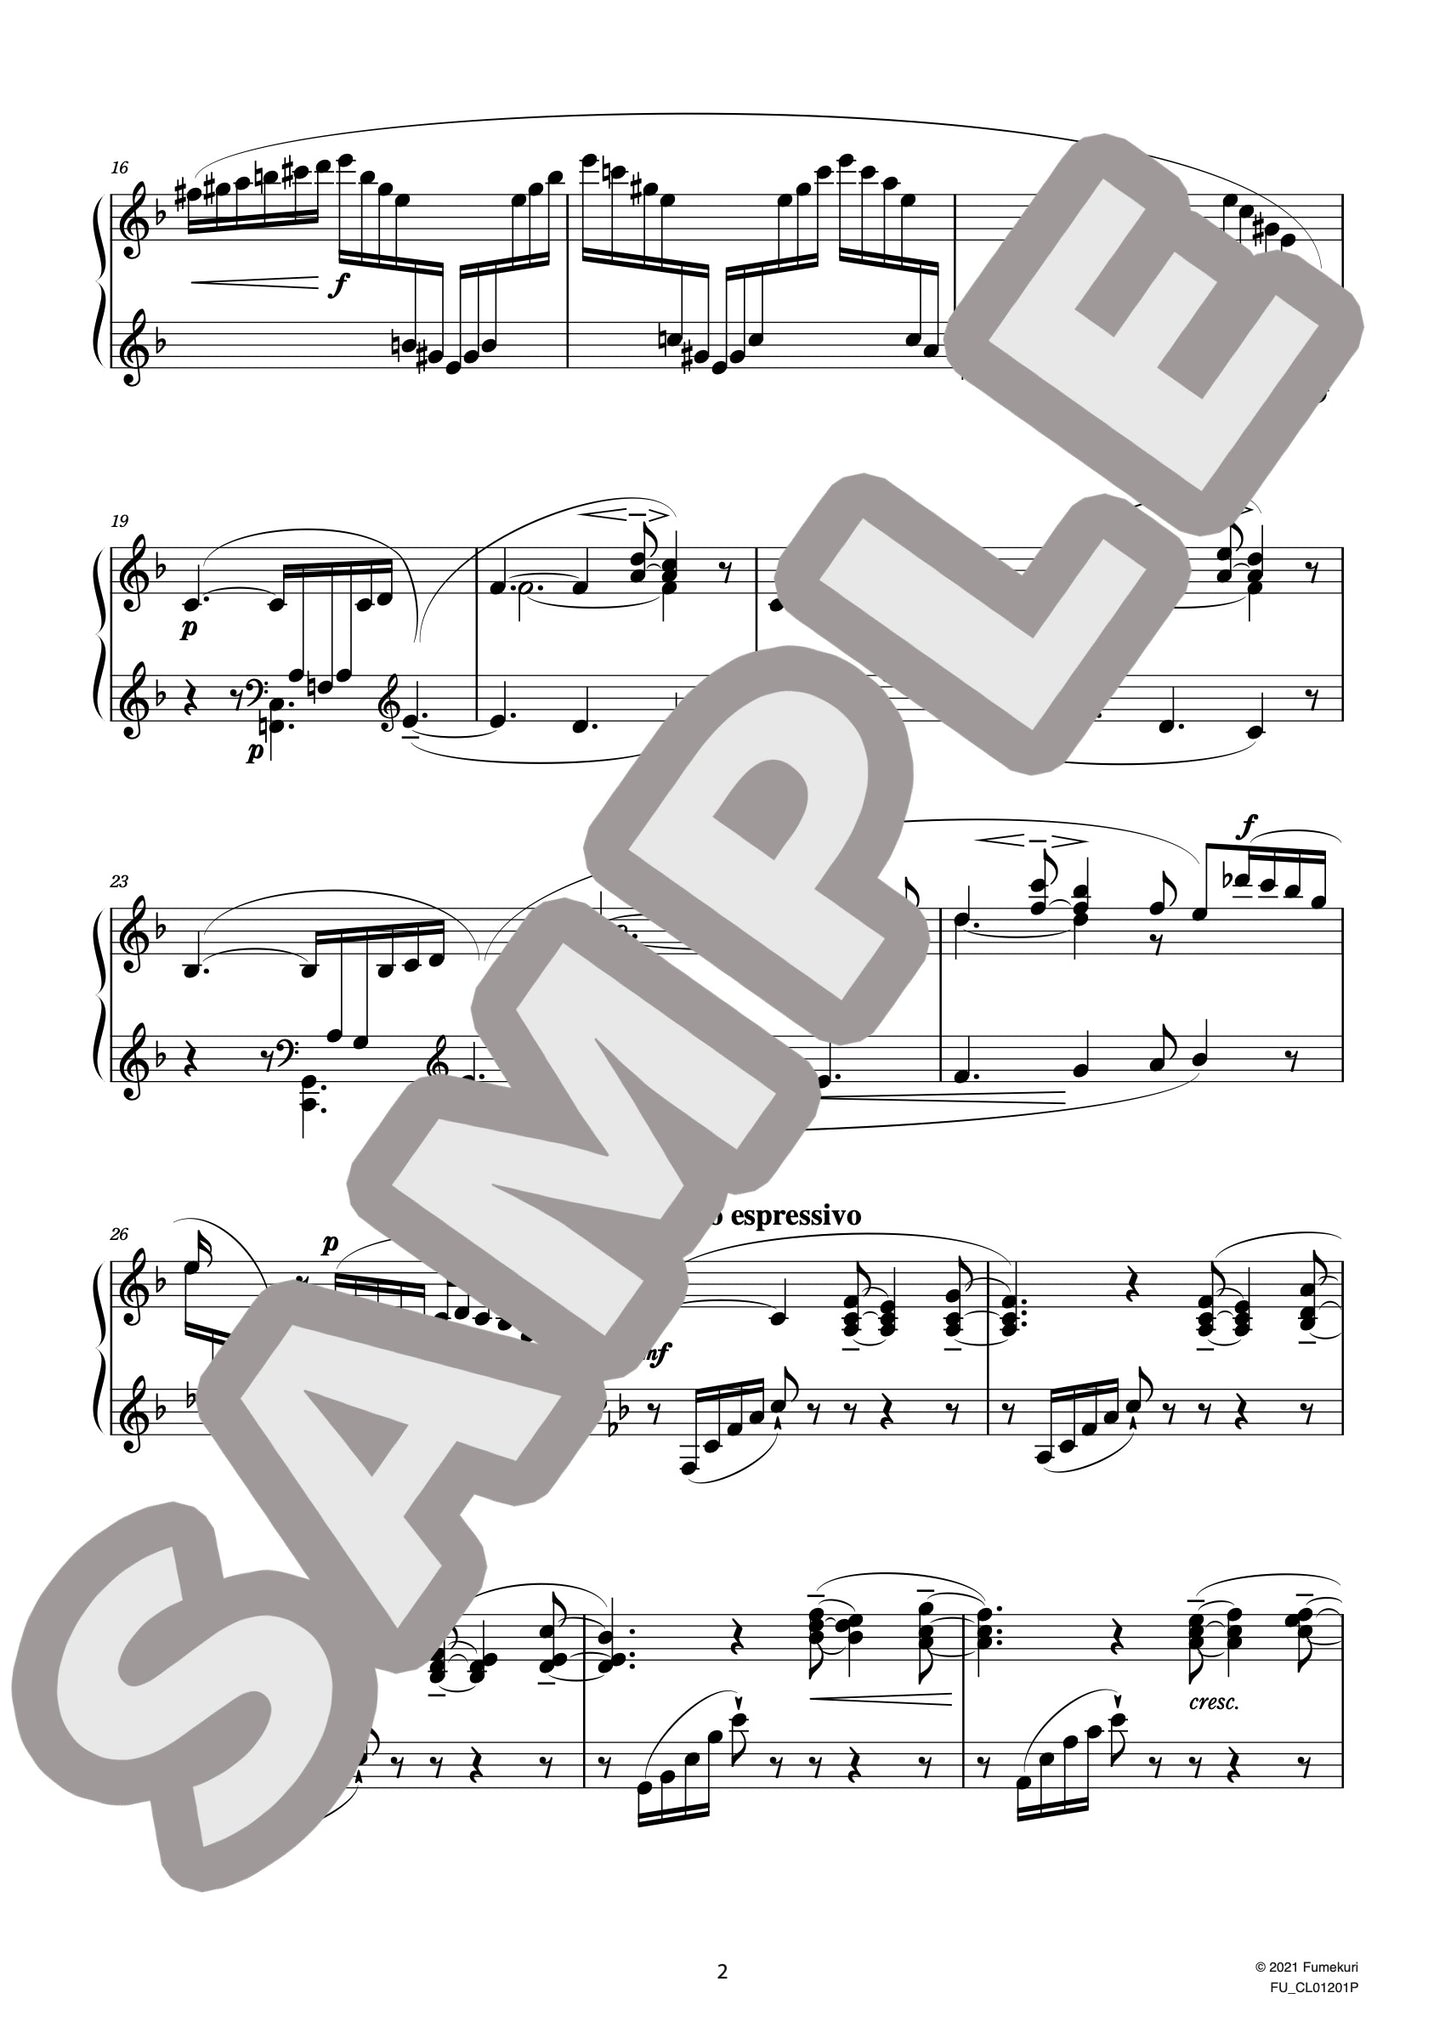 ピアノのための2つの小品 第2曲 白い蝶々（MASSENET) / クラシック・オリジナル楽曲【中上級】